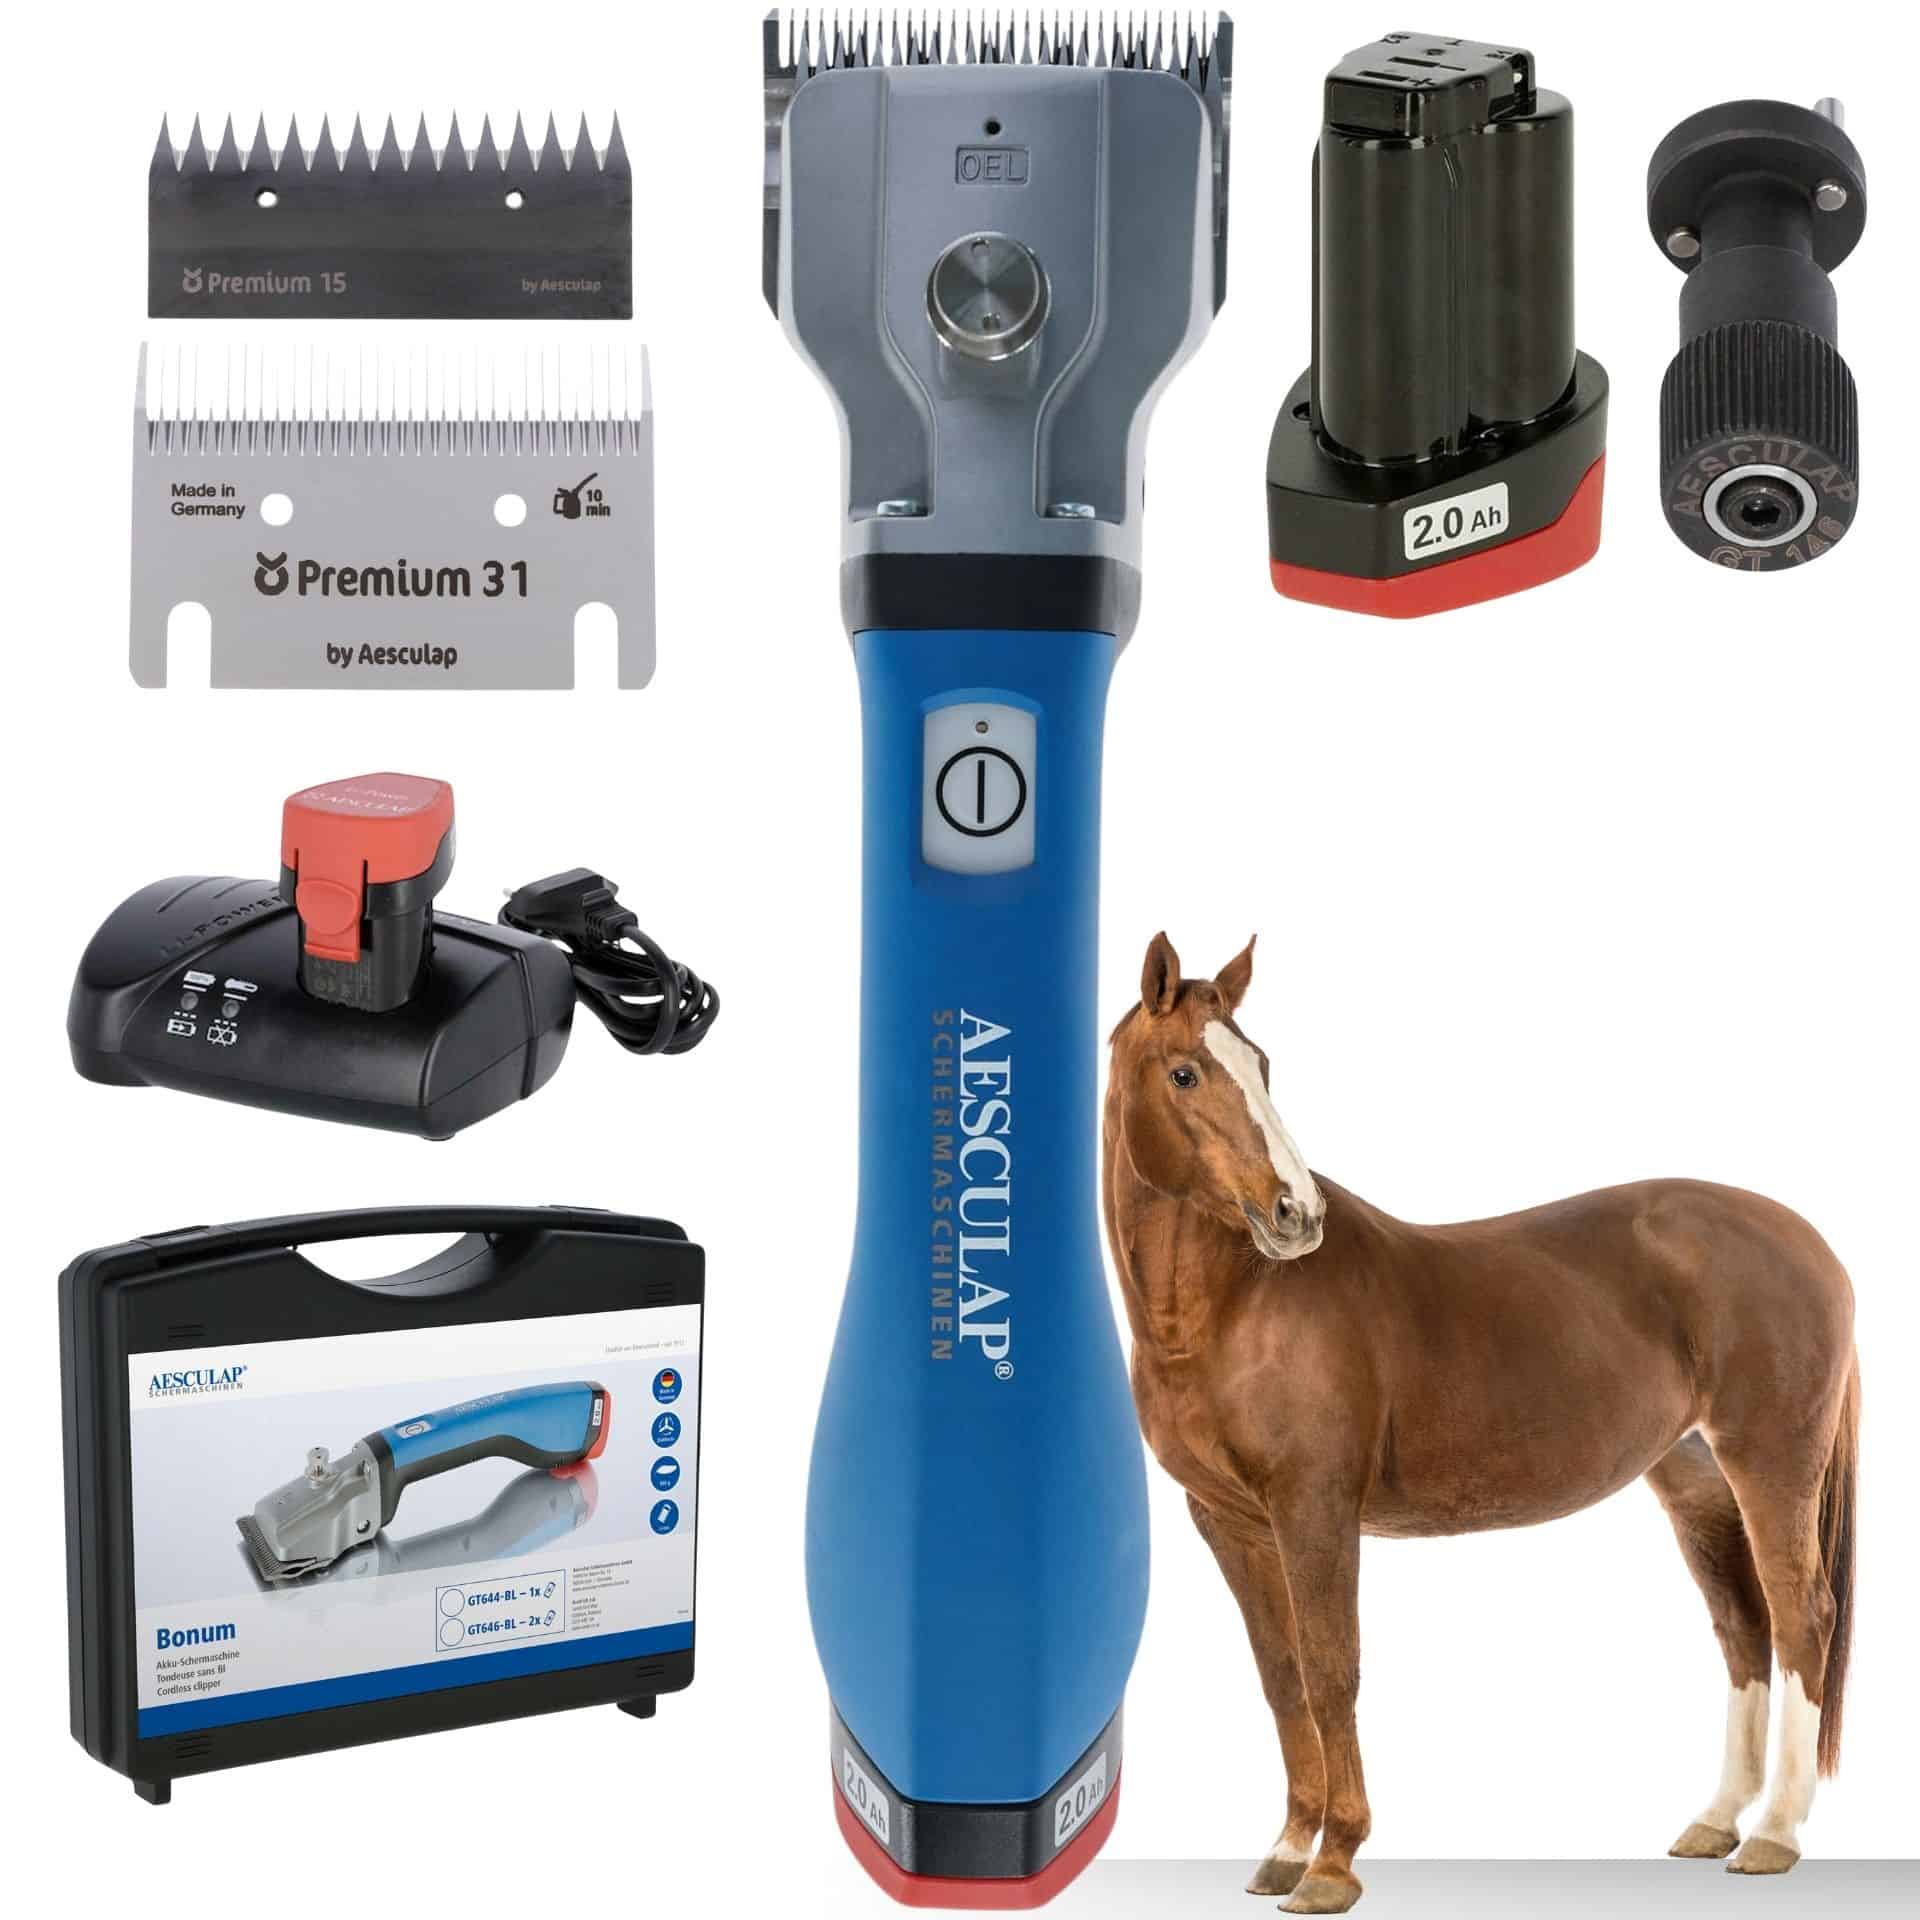 Aesculap batteri-klippmaskin hästar blå 1x batteri + justeringshjälpmedel 1x Batteria